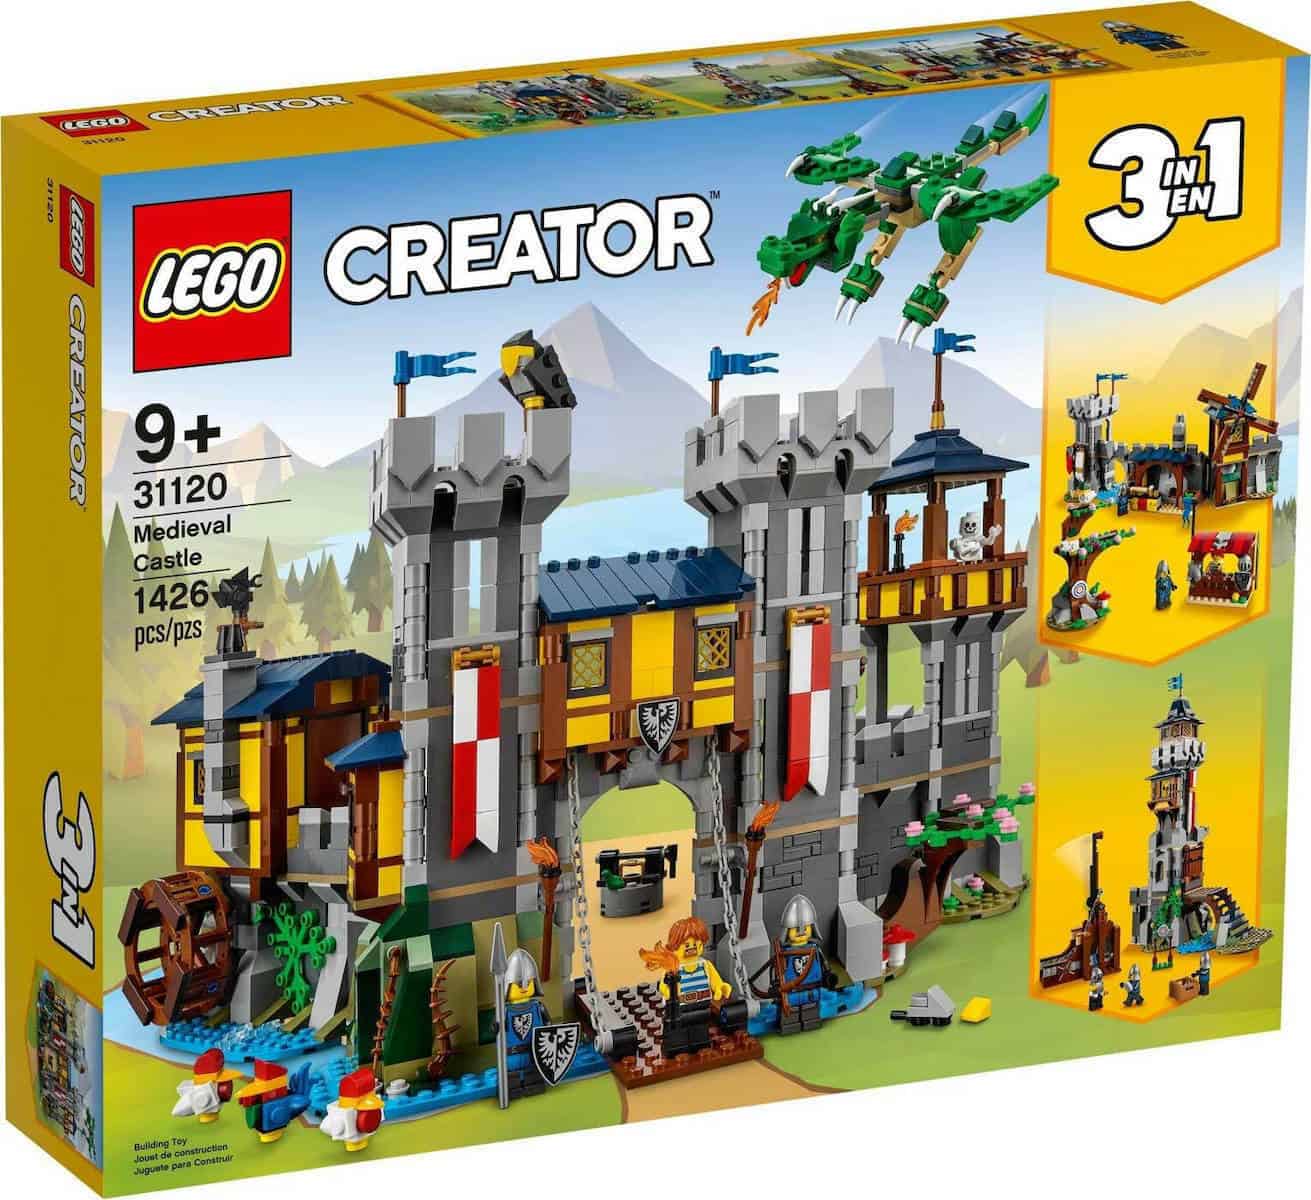 Lego Creator - Μεσαιωνικό Κάστρο